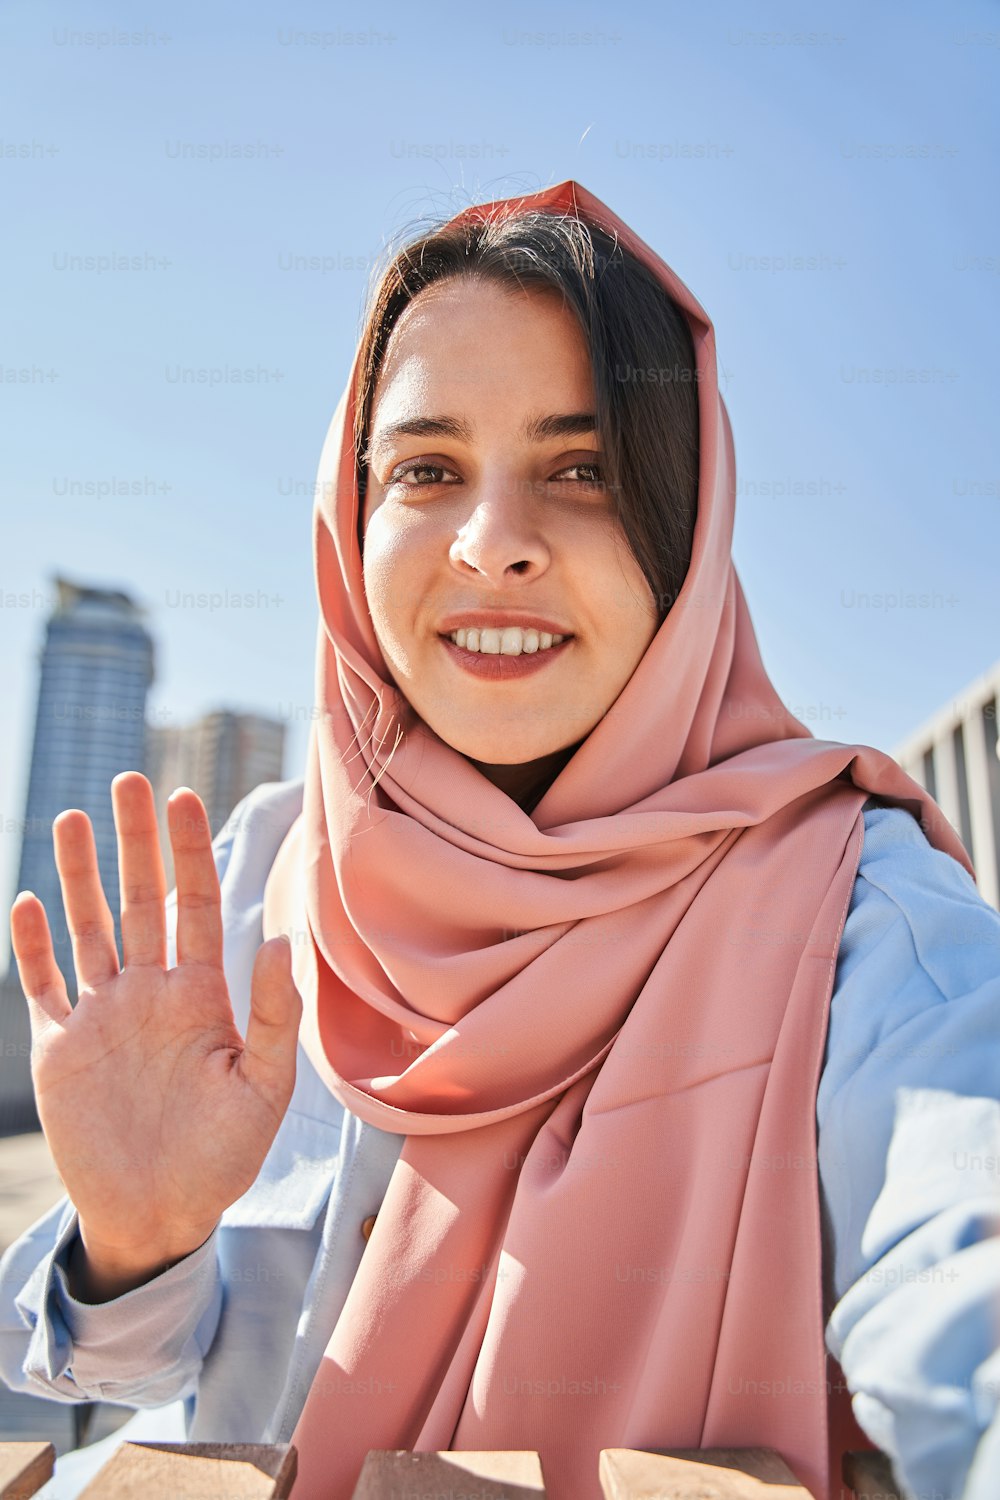 Salut. Vue de la blogueuse islamique moderne saluant ses abonnés lors de l’enregistrement de son blog vidéo dans la rue d’été